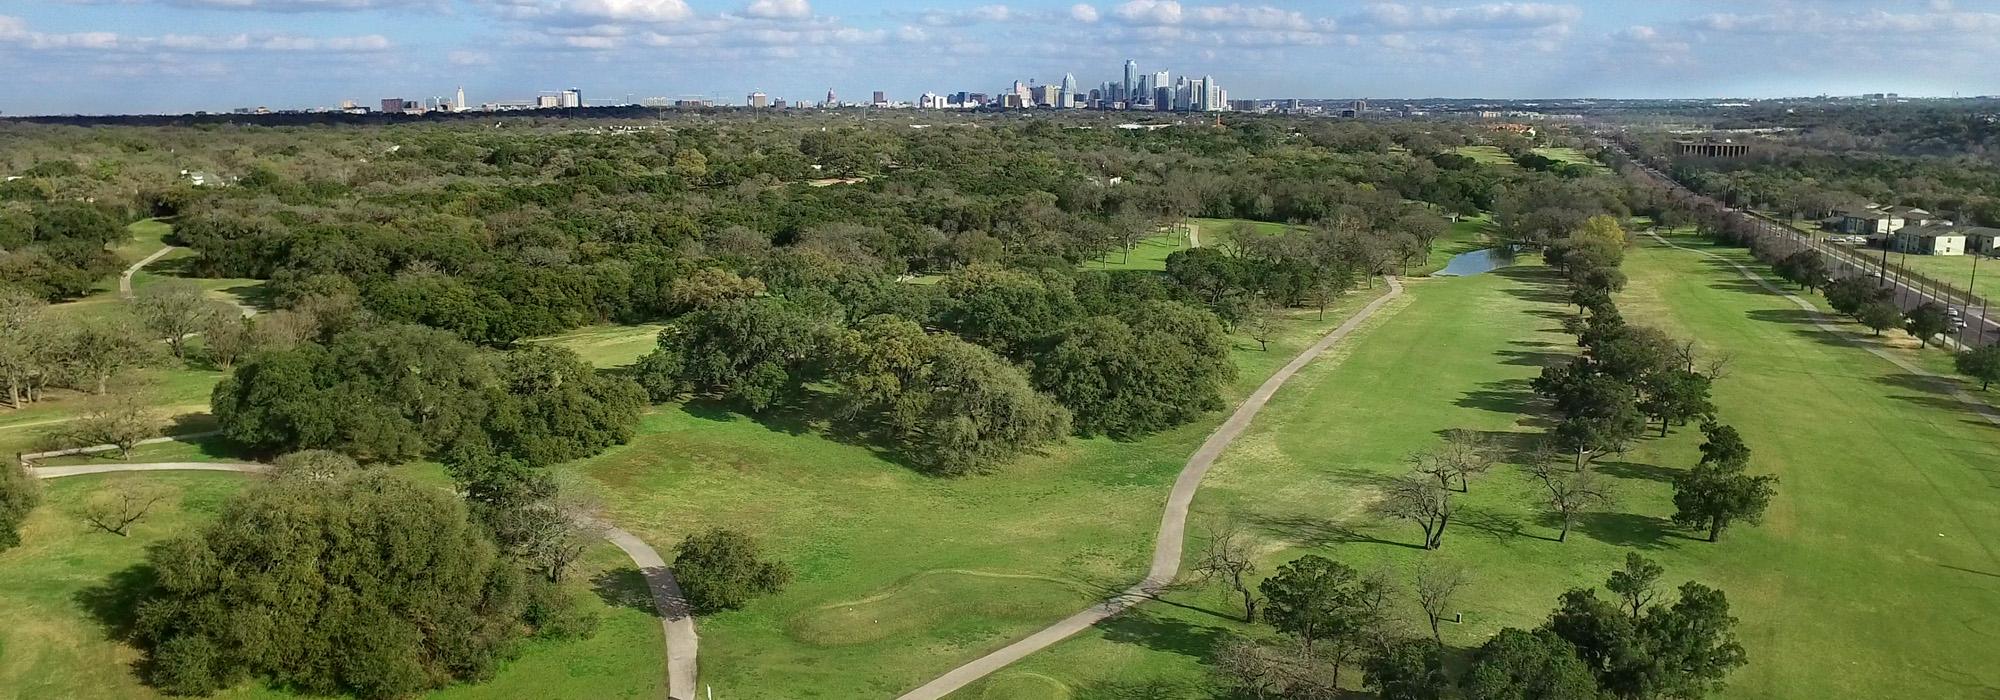 Lion's Municipal Golf Course, Austin, TX